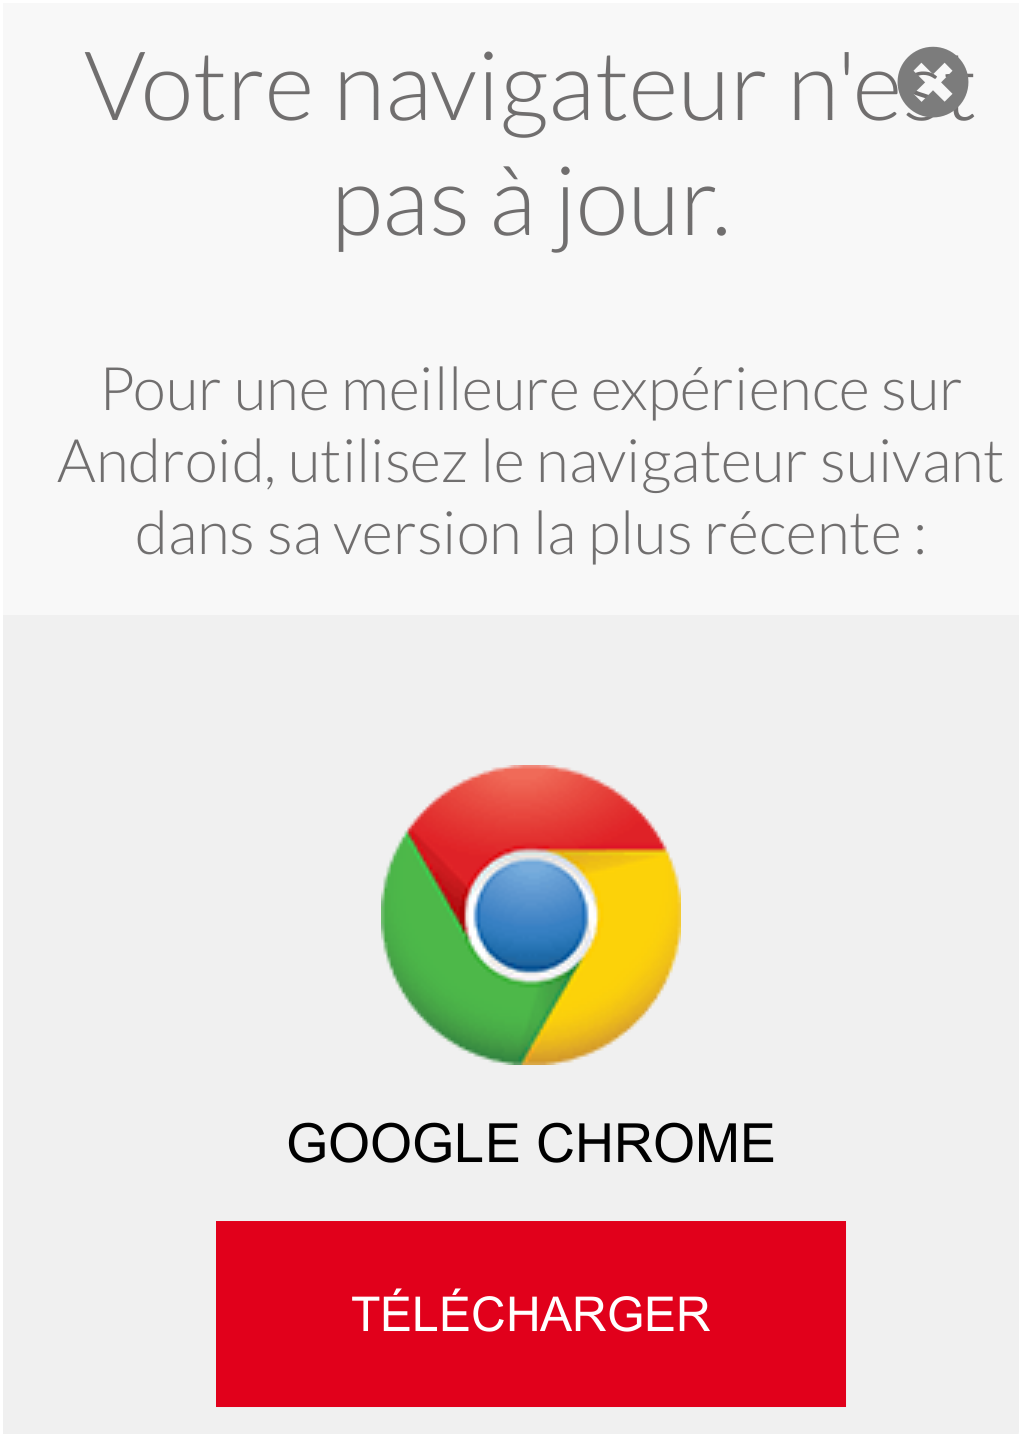 publicité mensongère de Google prétendant que mon navigateur n'est pas à jour et que dois télécharger chrome